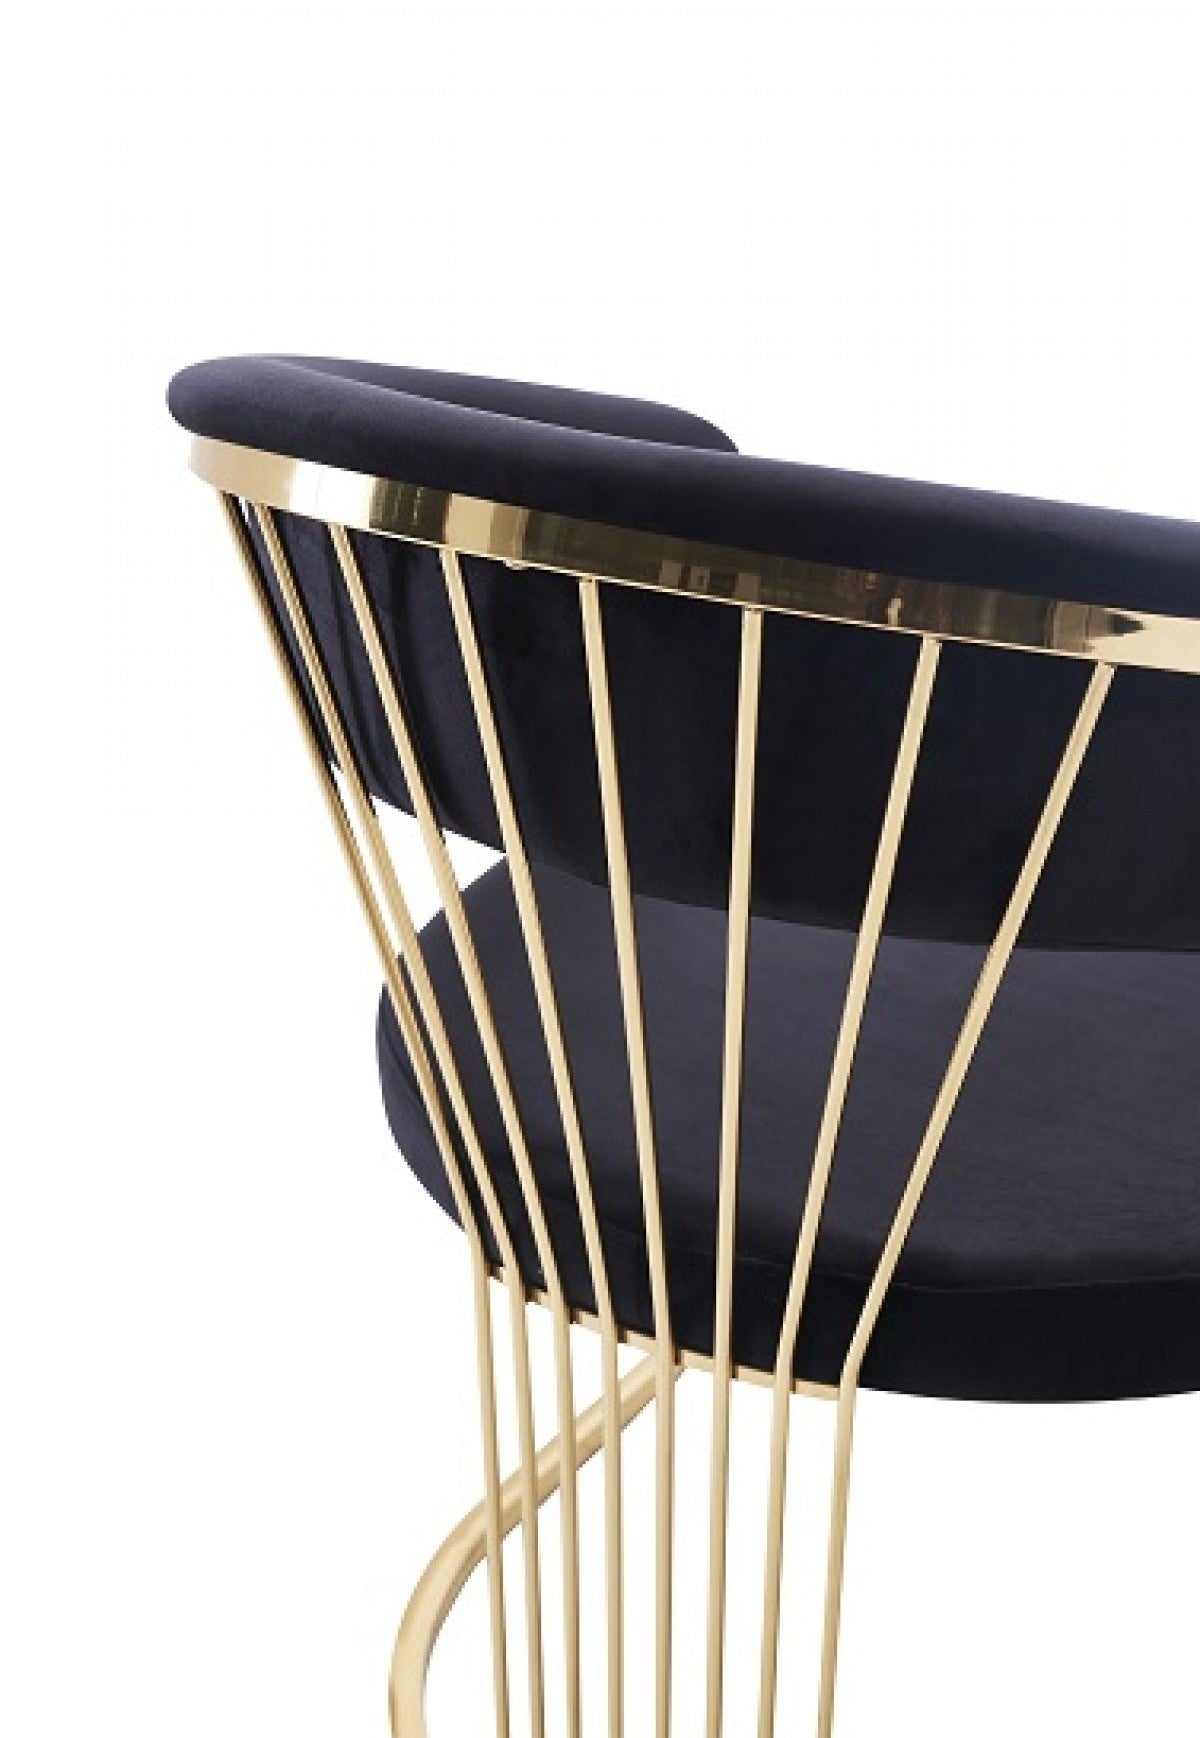 Modrest Linda Modern Black Velvet and Gold Dining Chair